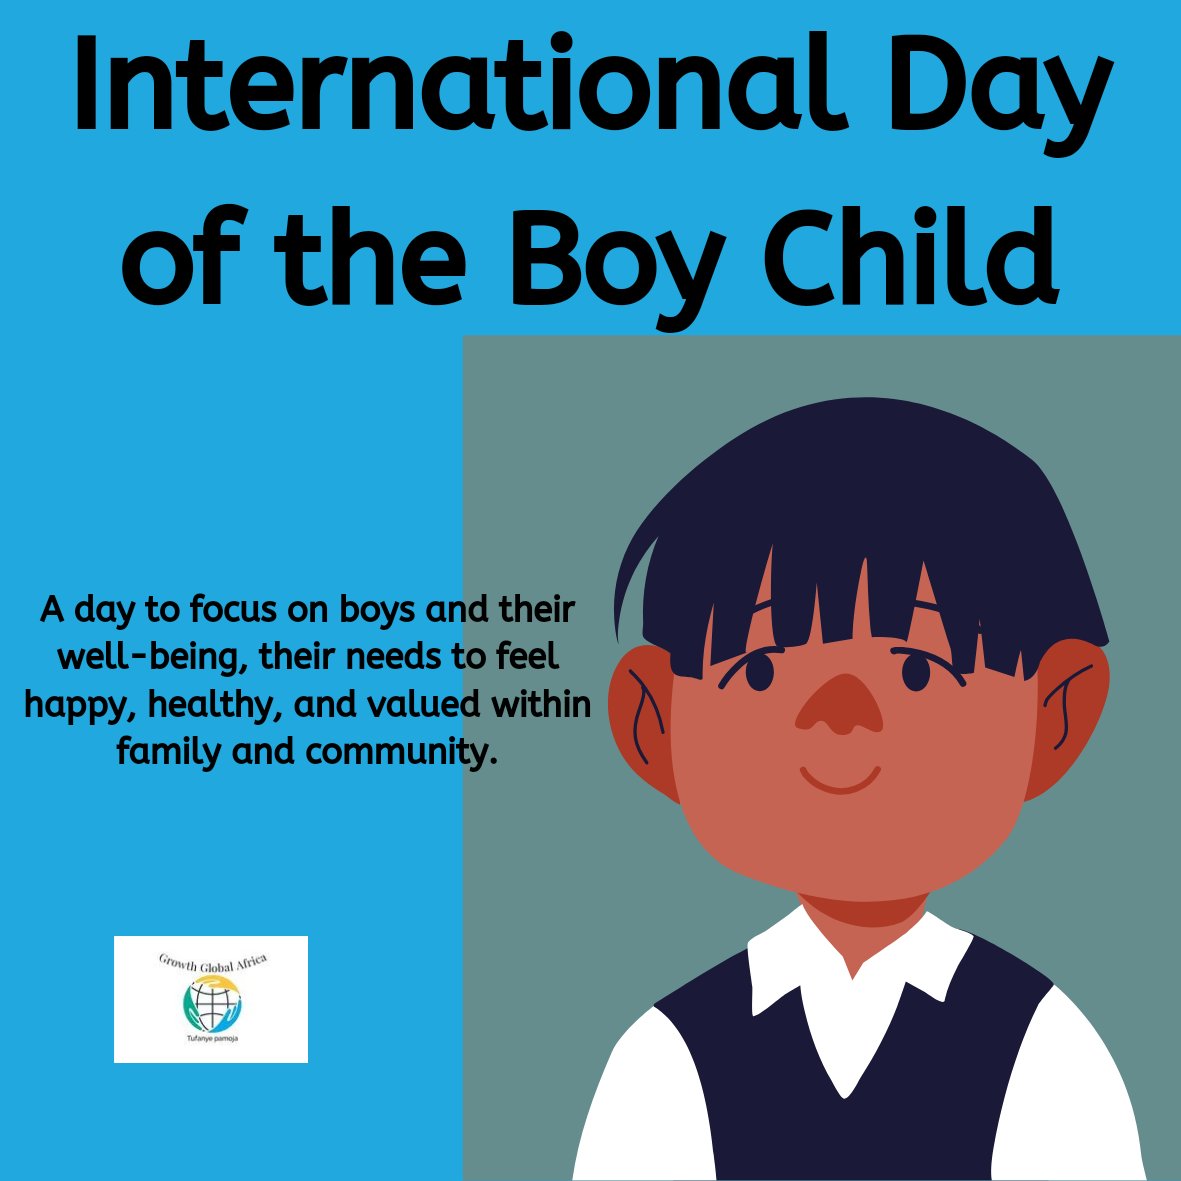 Happy international Day of the boy child.
#Childrensrights